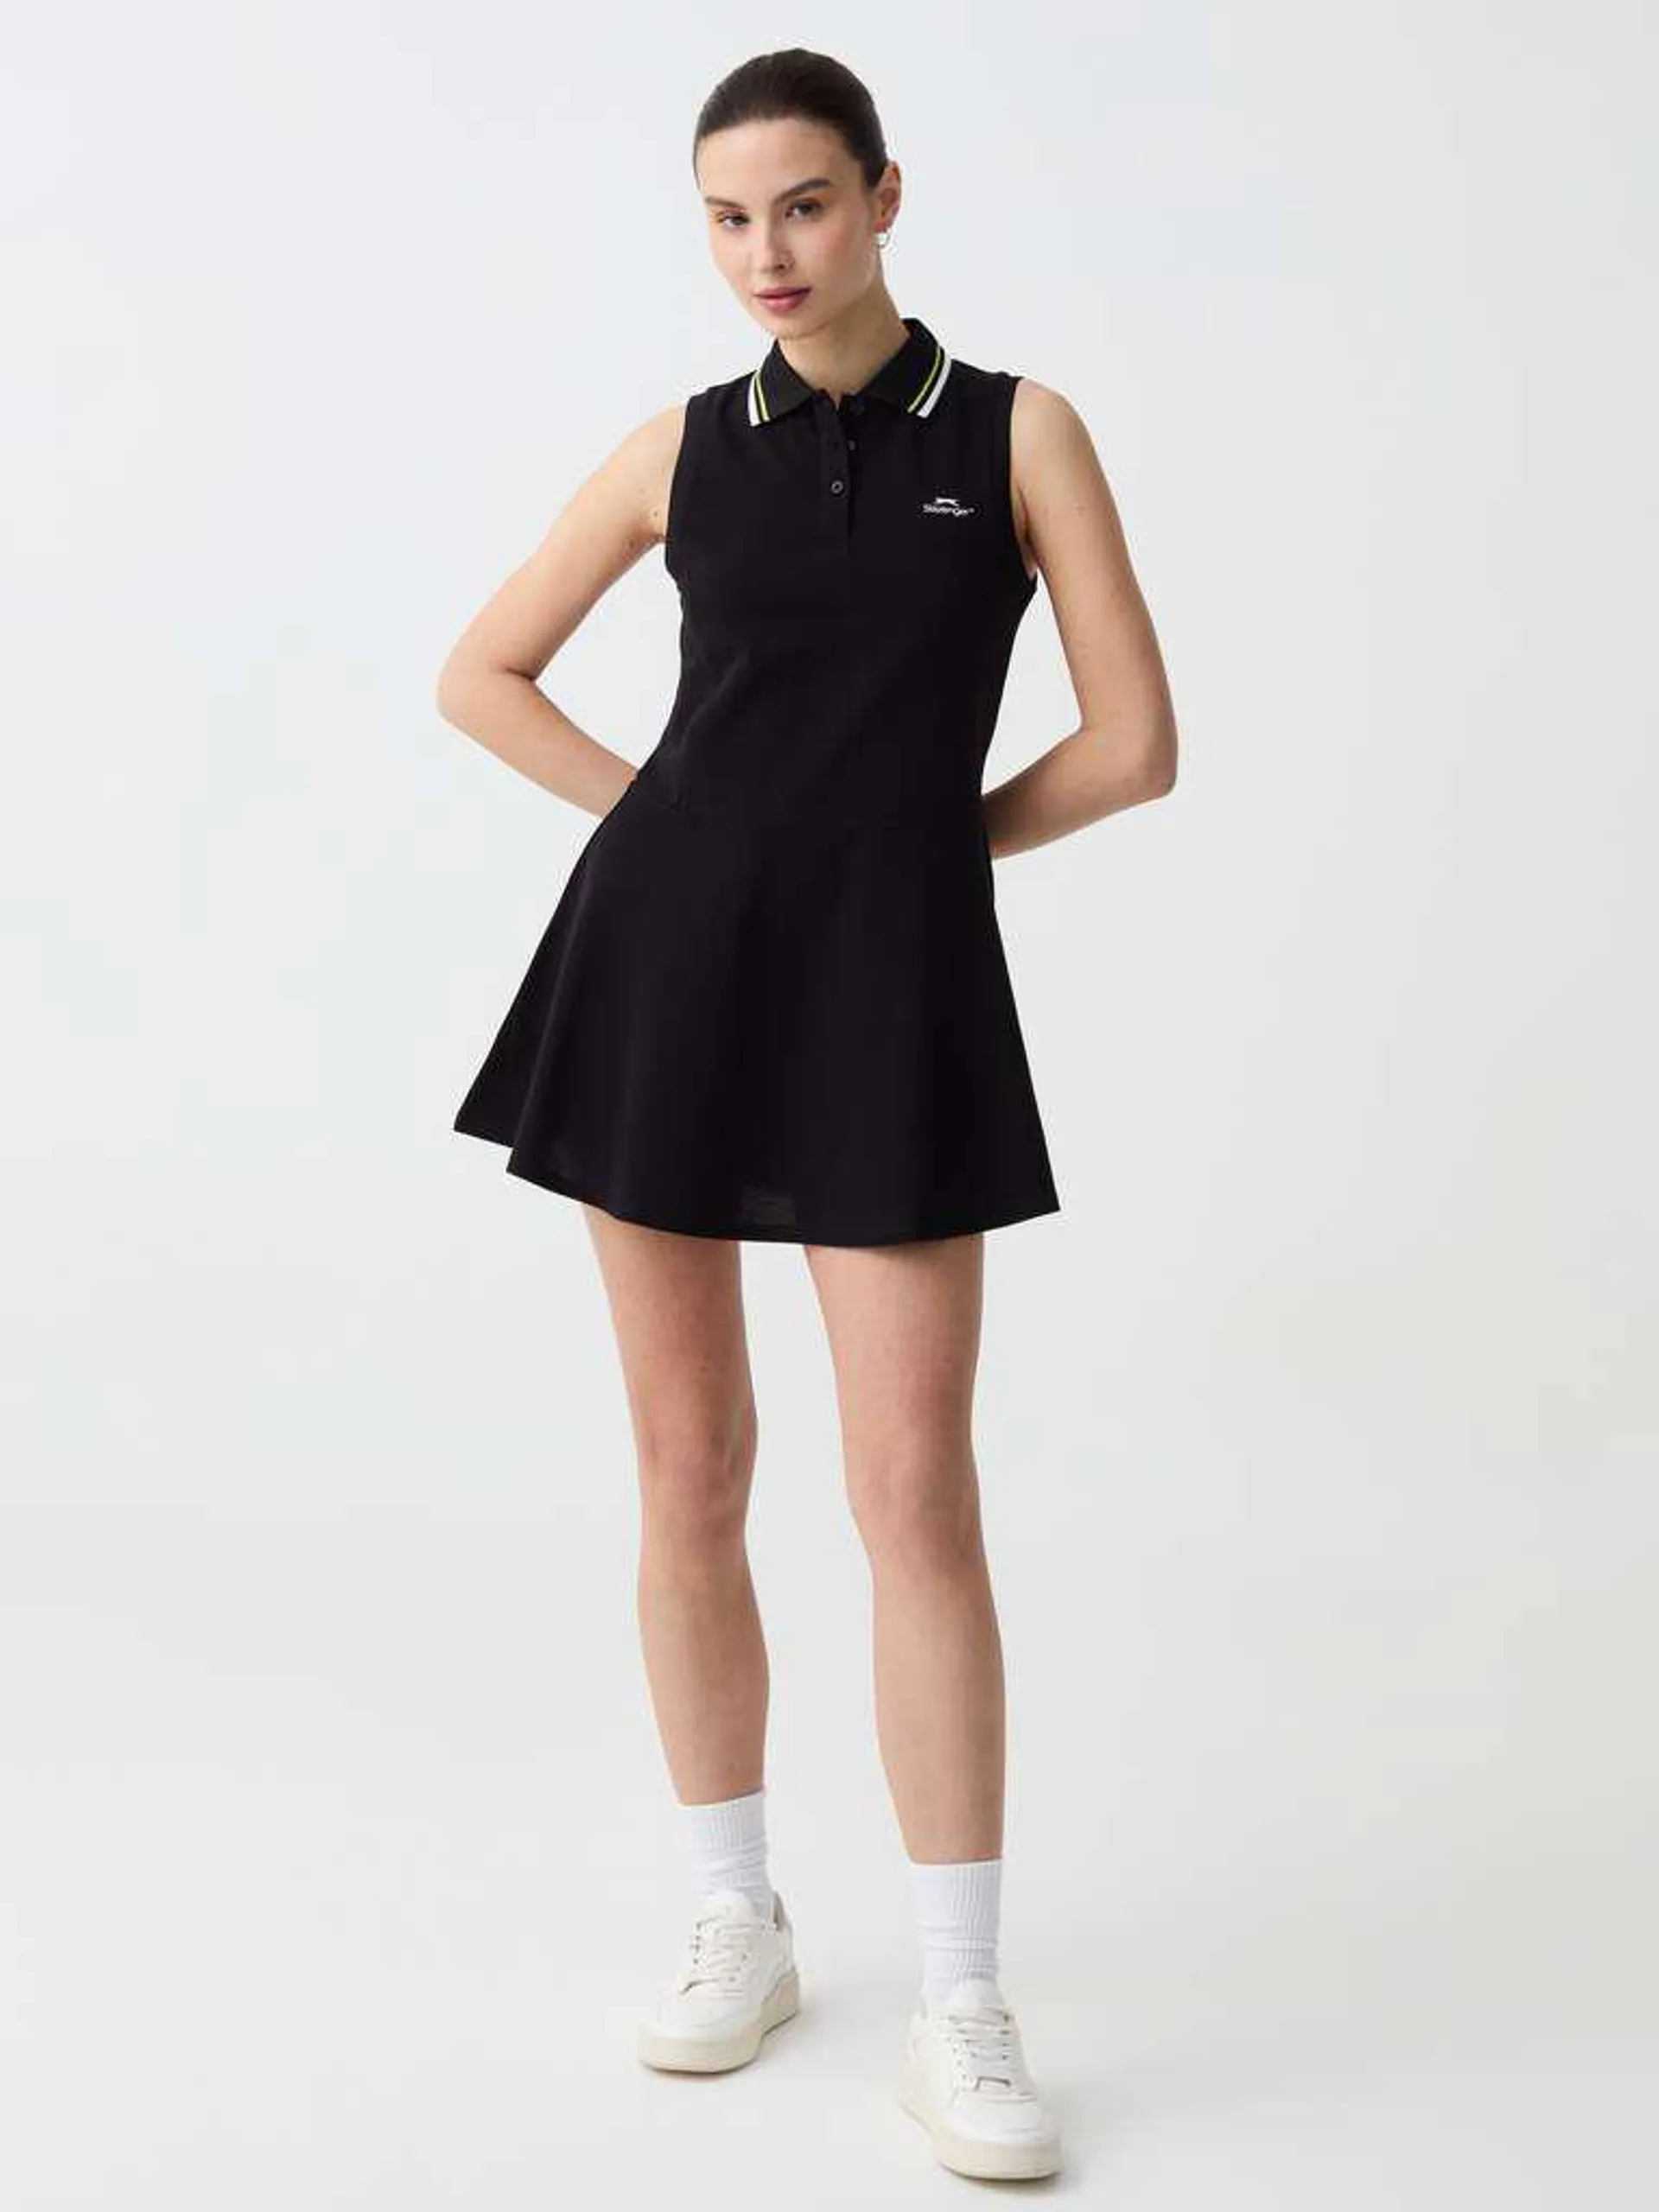 Black Slazenger tennis polo dress